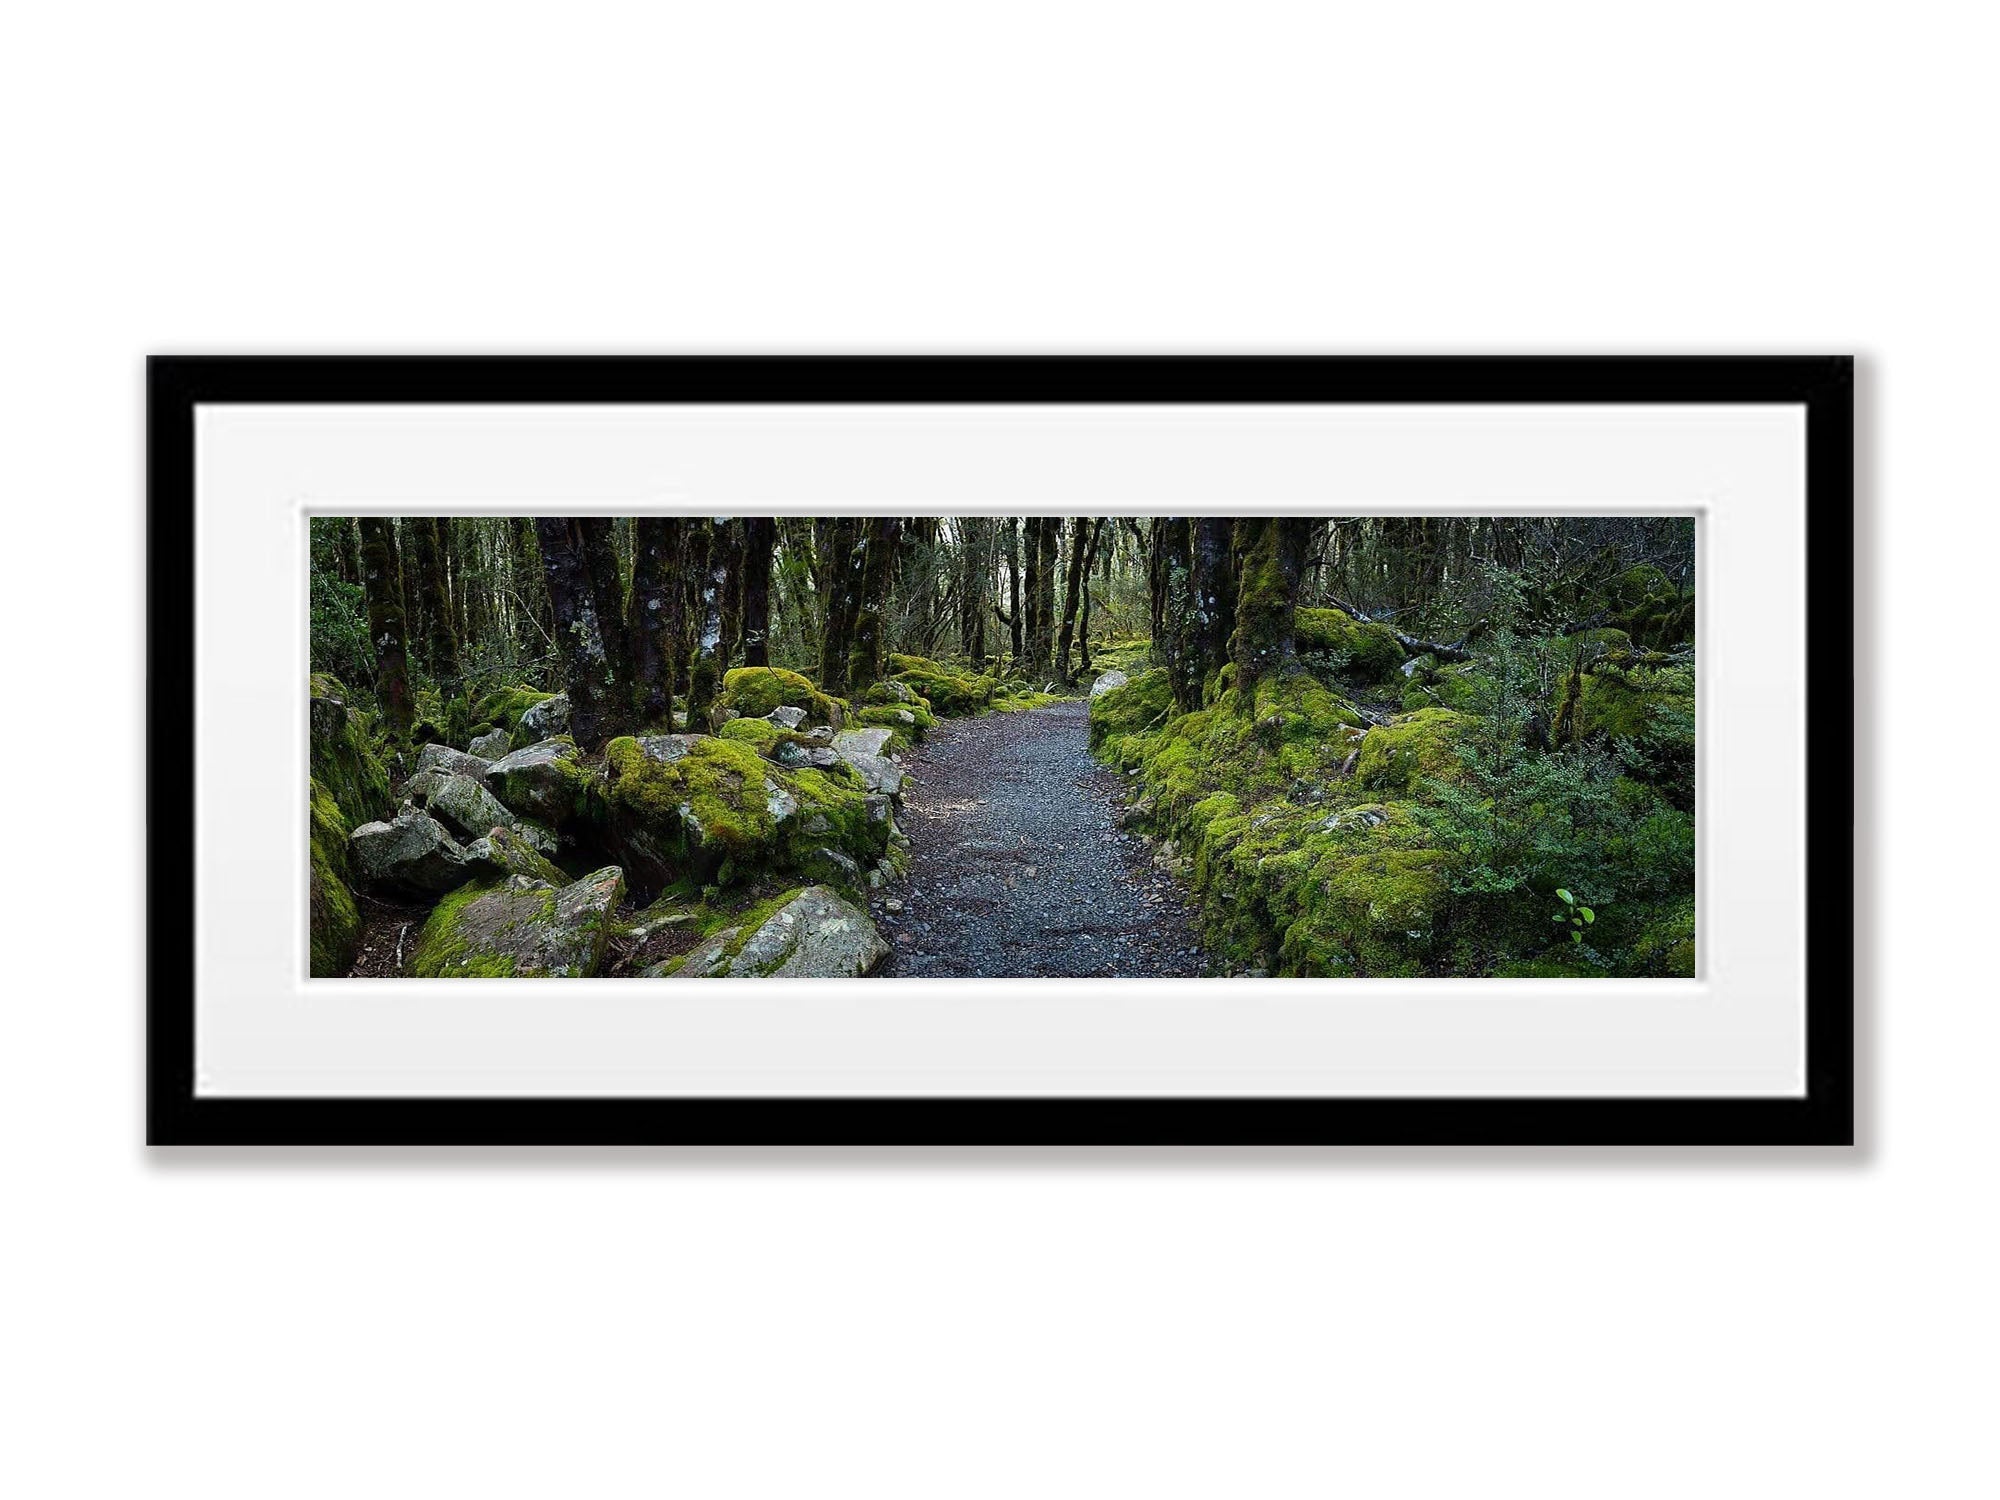 Arthurs Pass Forest - New Zealand